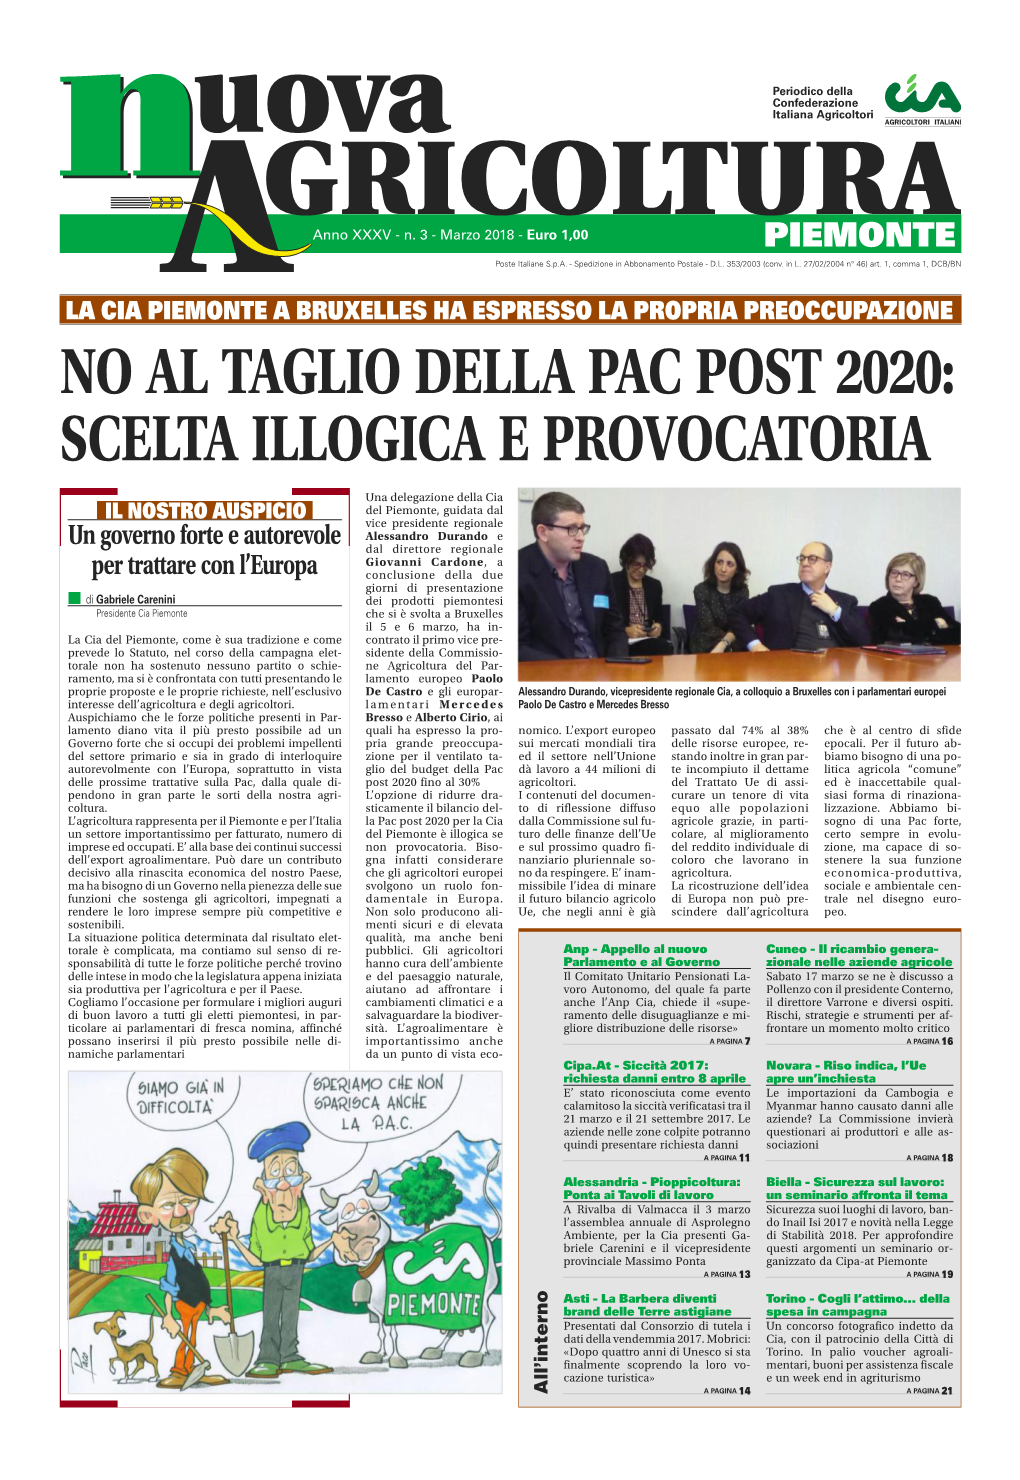 No Al Taglio Della Pac Post 2020: Scelta Illogica E